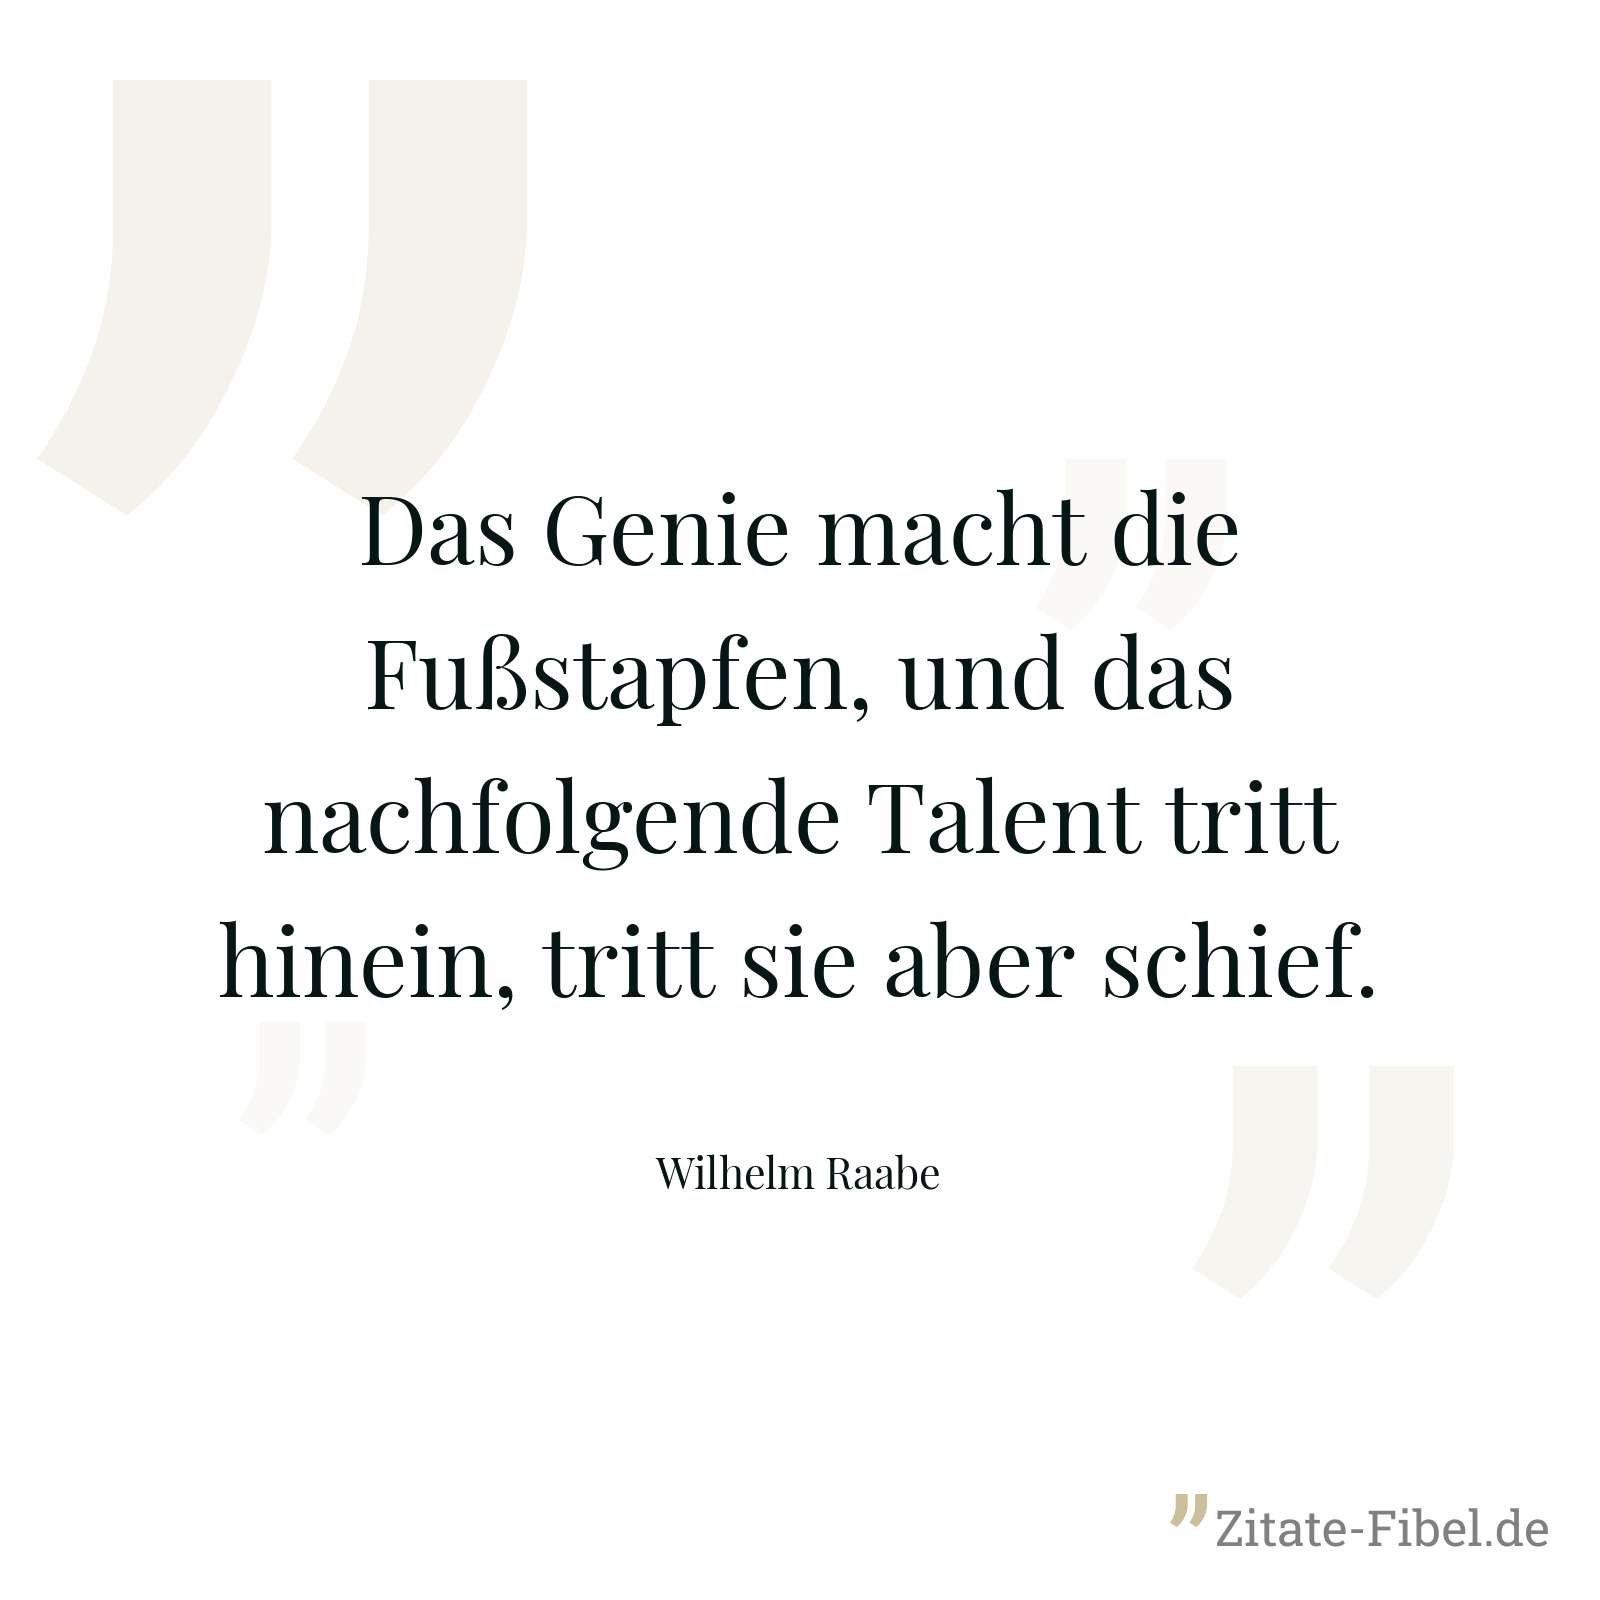 Das Genie macht die Fußstapfen, und das nachfolgende Talent tritt hinein, tritt sie aber schief. - Wilhelm Raabe